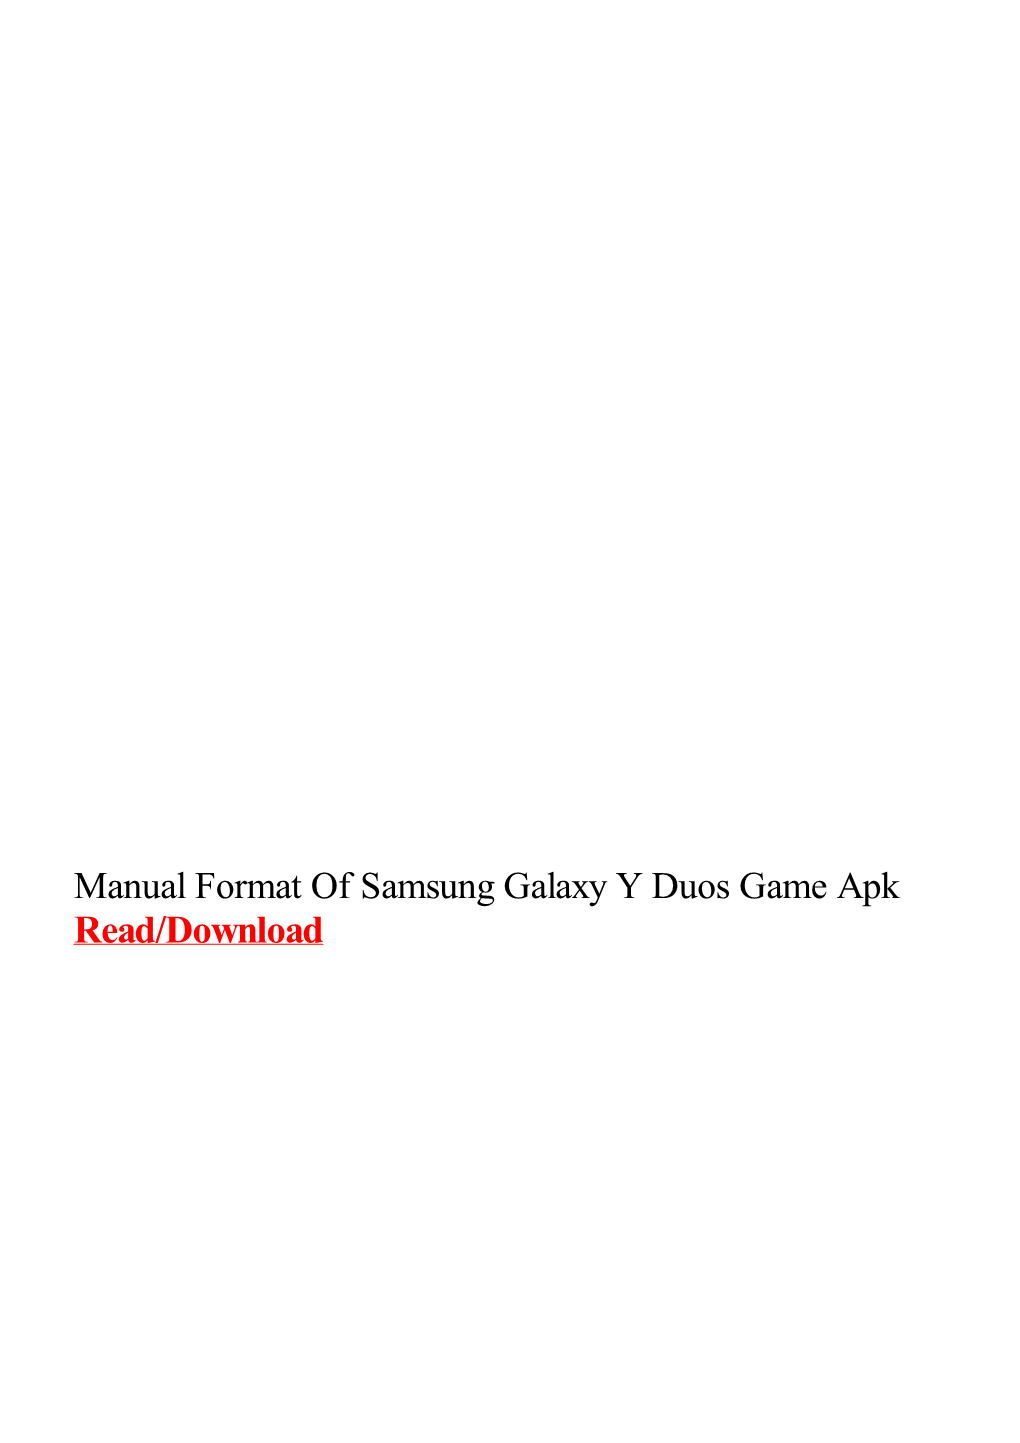 Manual Format of Samsung Galaxy Y Duos Game Apk